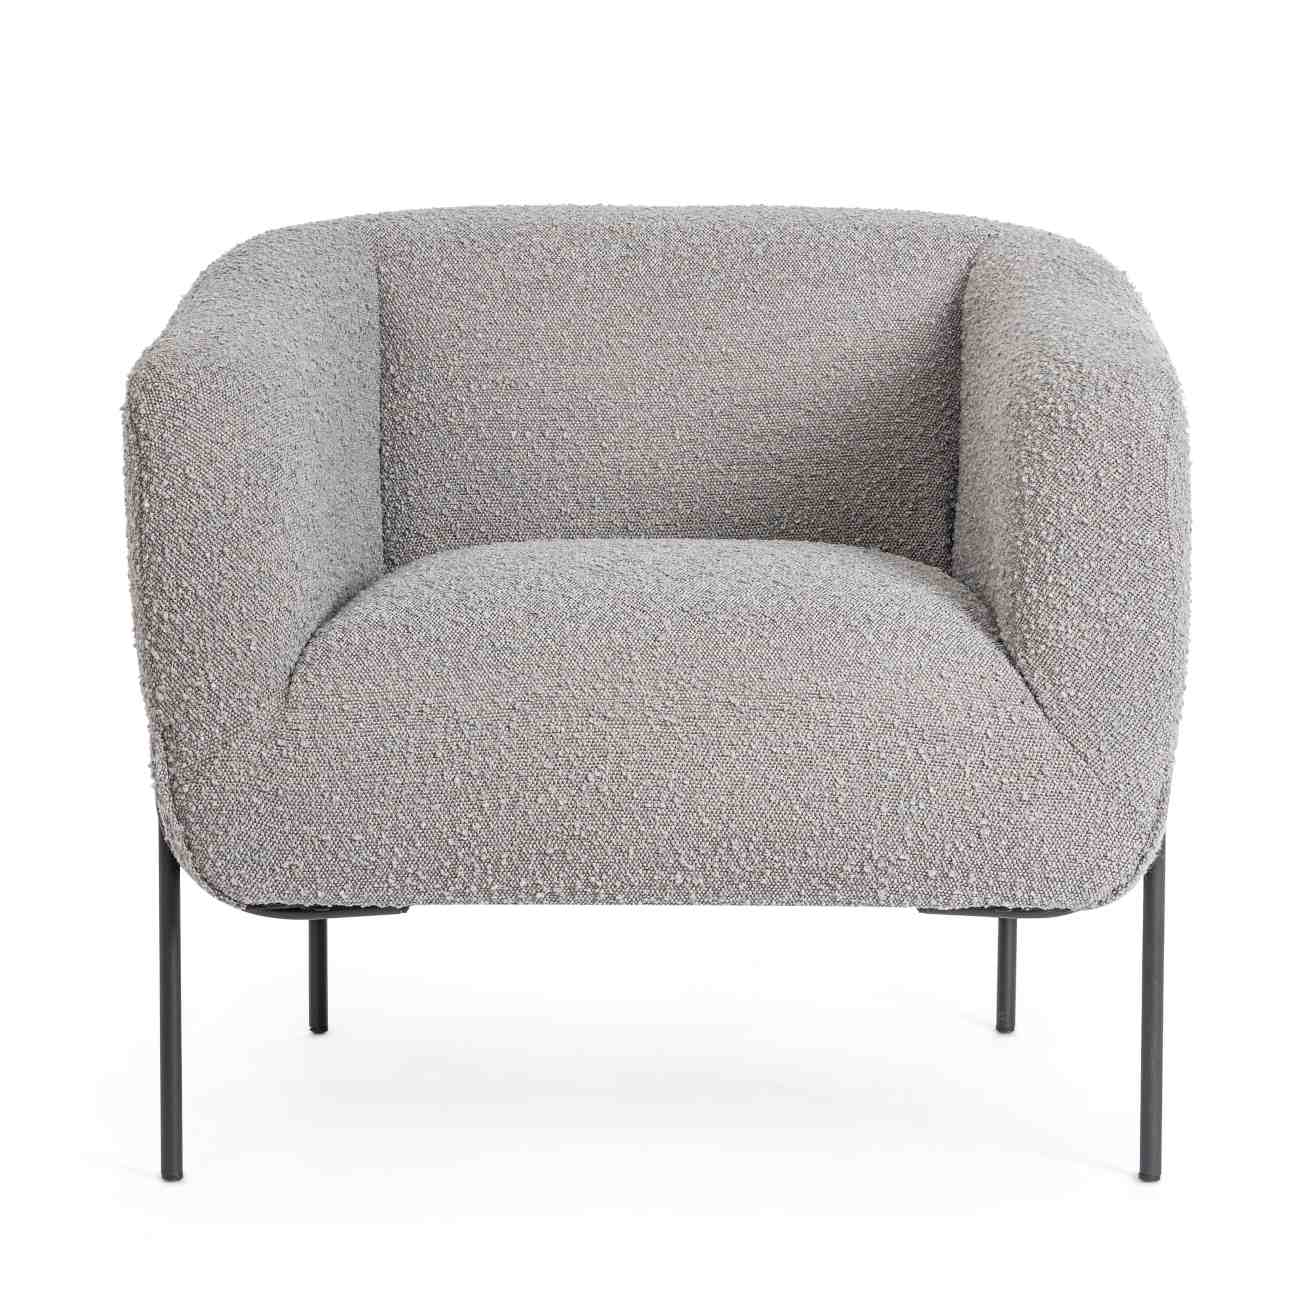 Der Sessel Claudine überzeugt mit seinem modernen Stil. Gefertigt wurde er aus Bouclè-Stoff, welcher einen grauen Farbton besitzt. Das Gestell ist aus Metall und hat eine schwarze Farbe. Der Sessel verfügt über eine Armlehne.